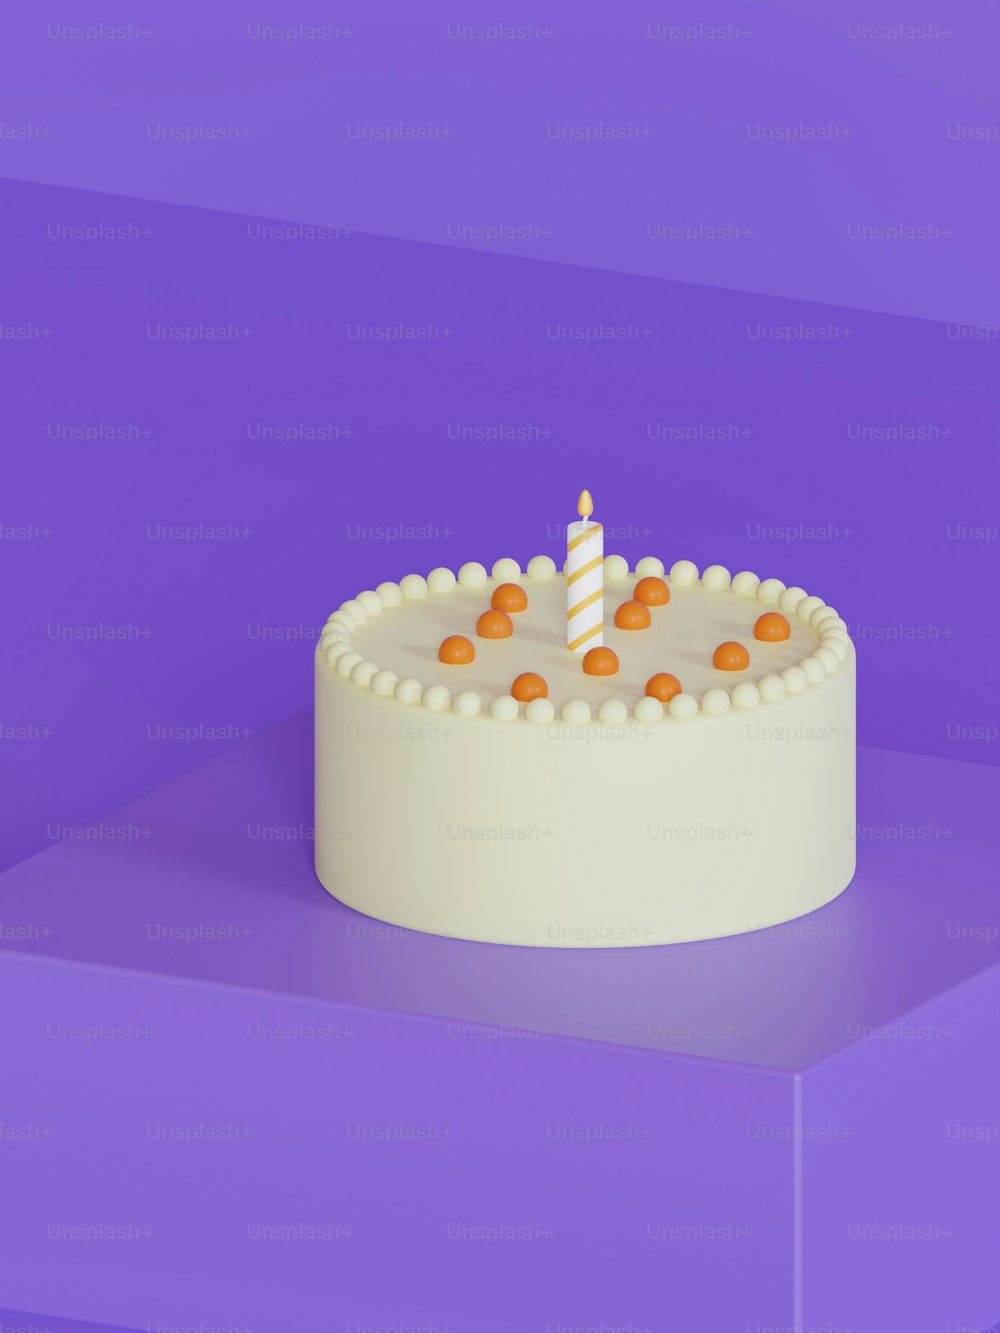 um bolo de aniversário com uma única vela sobre ele